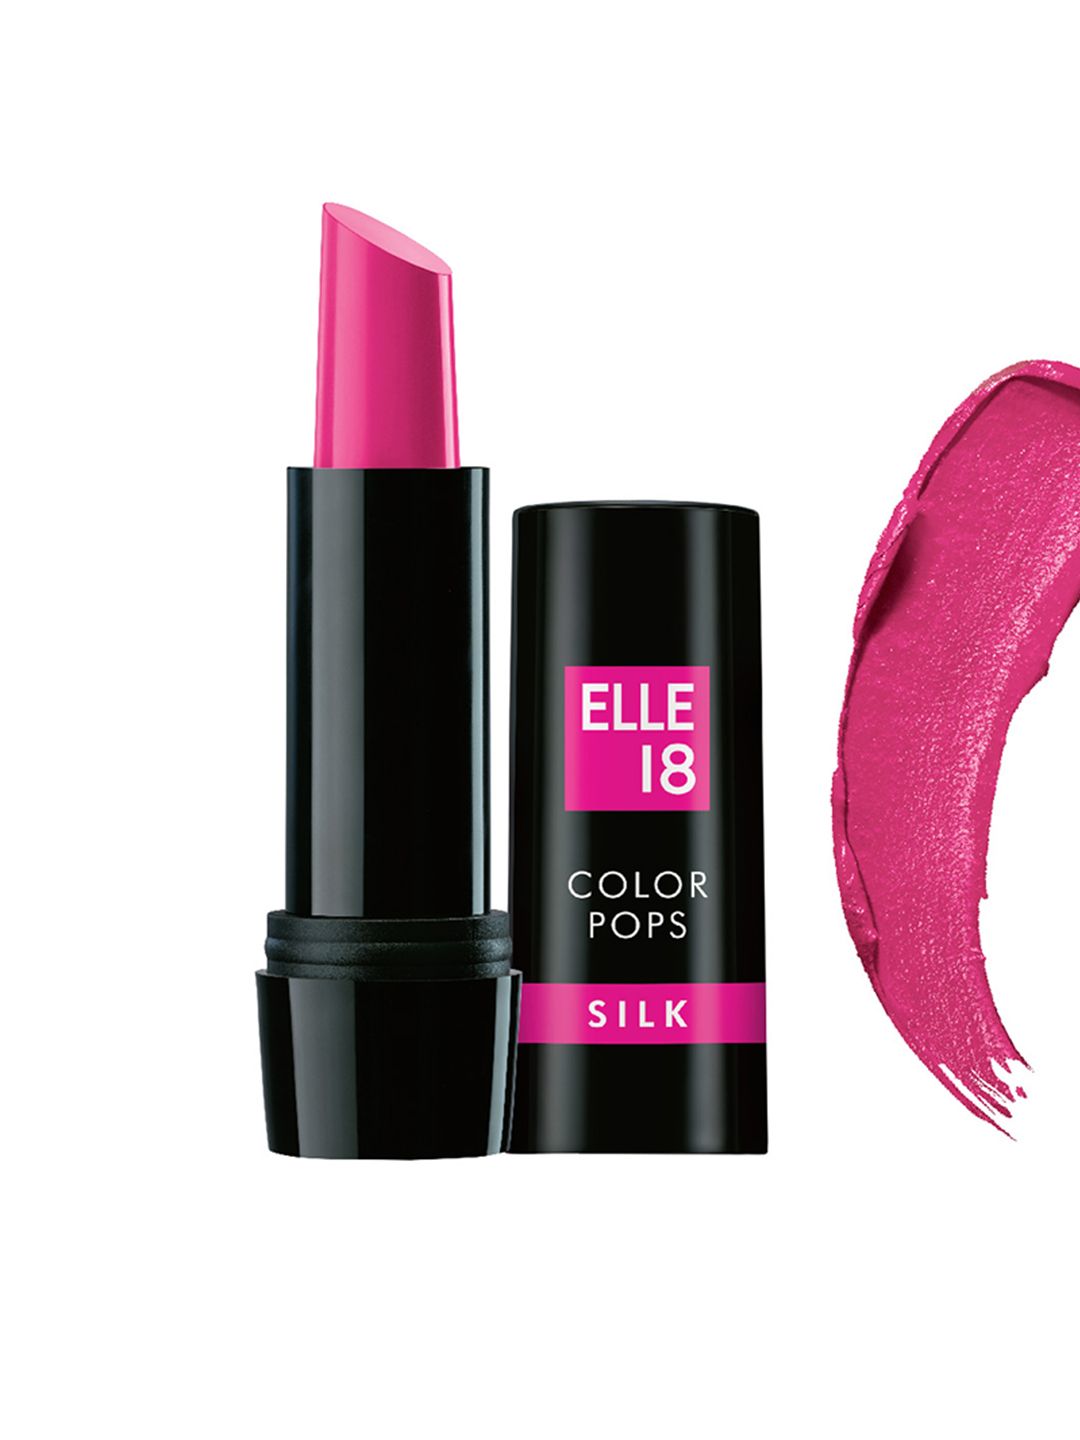 ELLE 18 P23 Color Pops Silk Lipstick 4.2 g Price in India